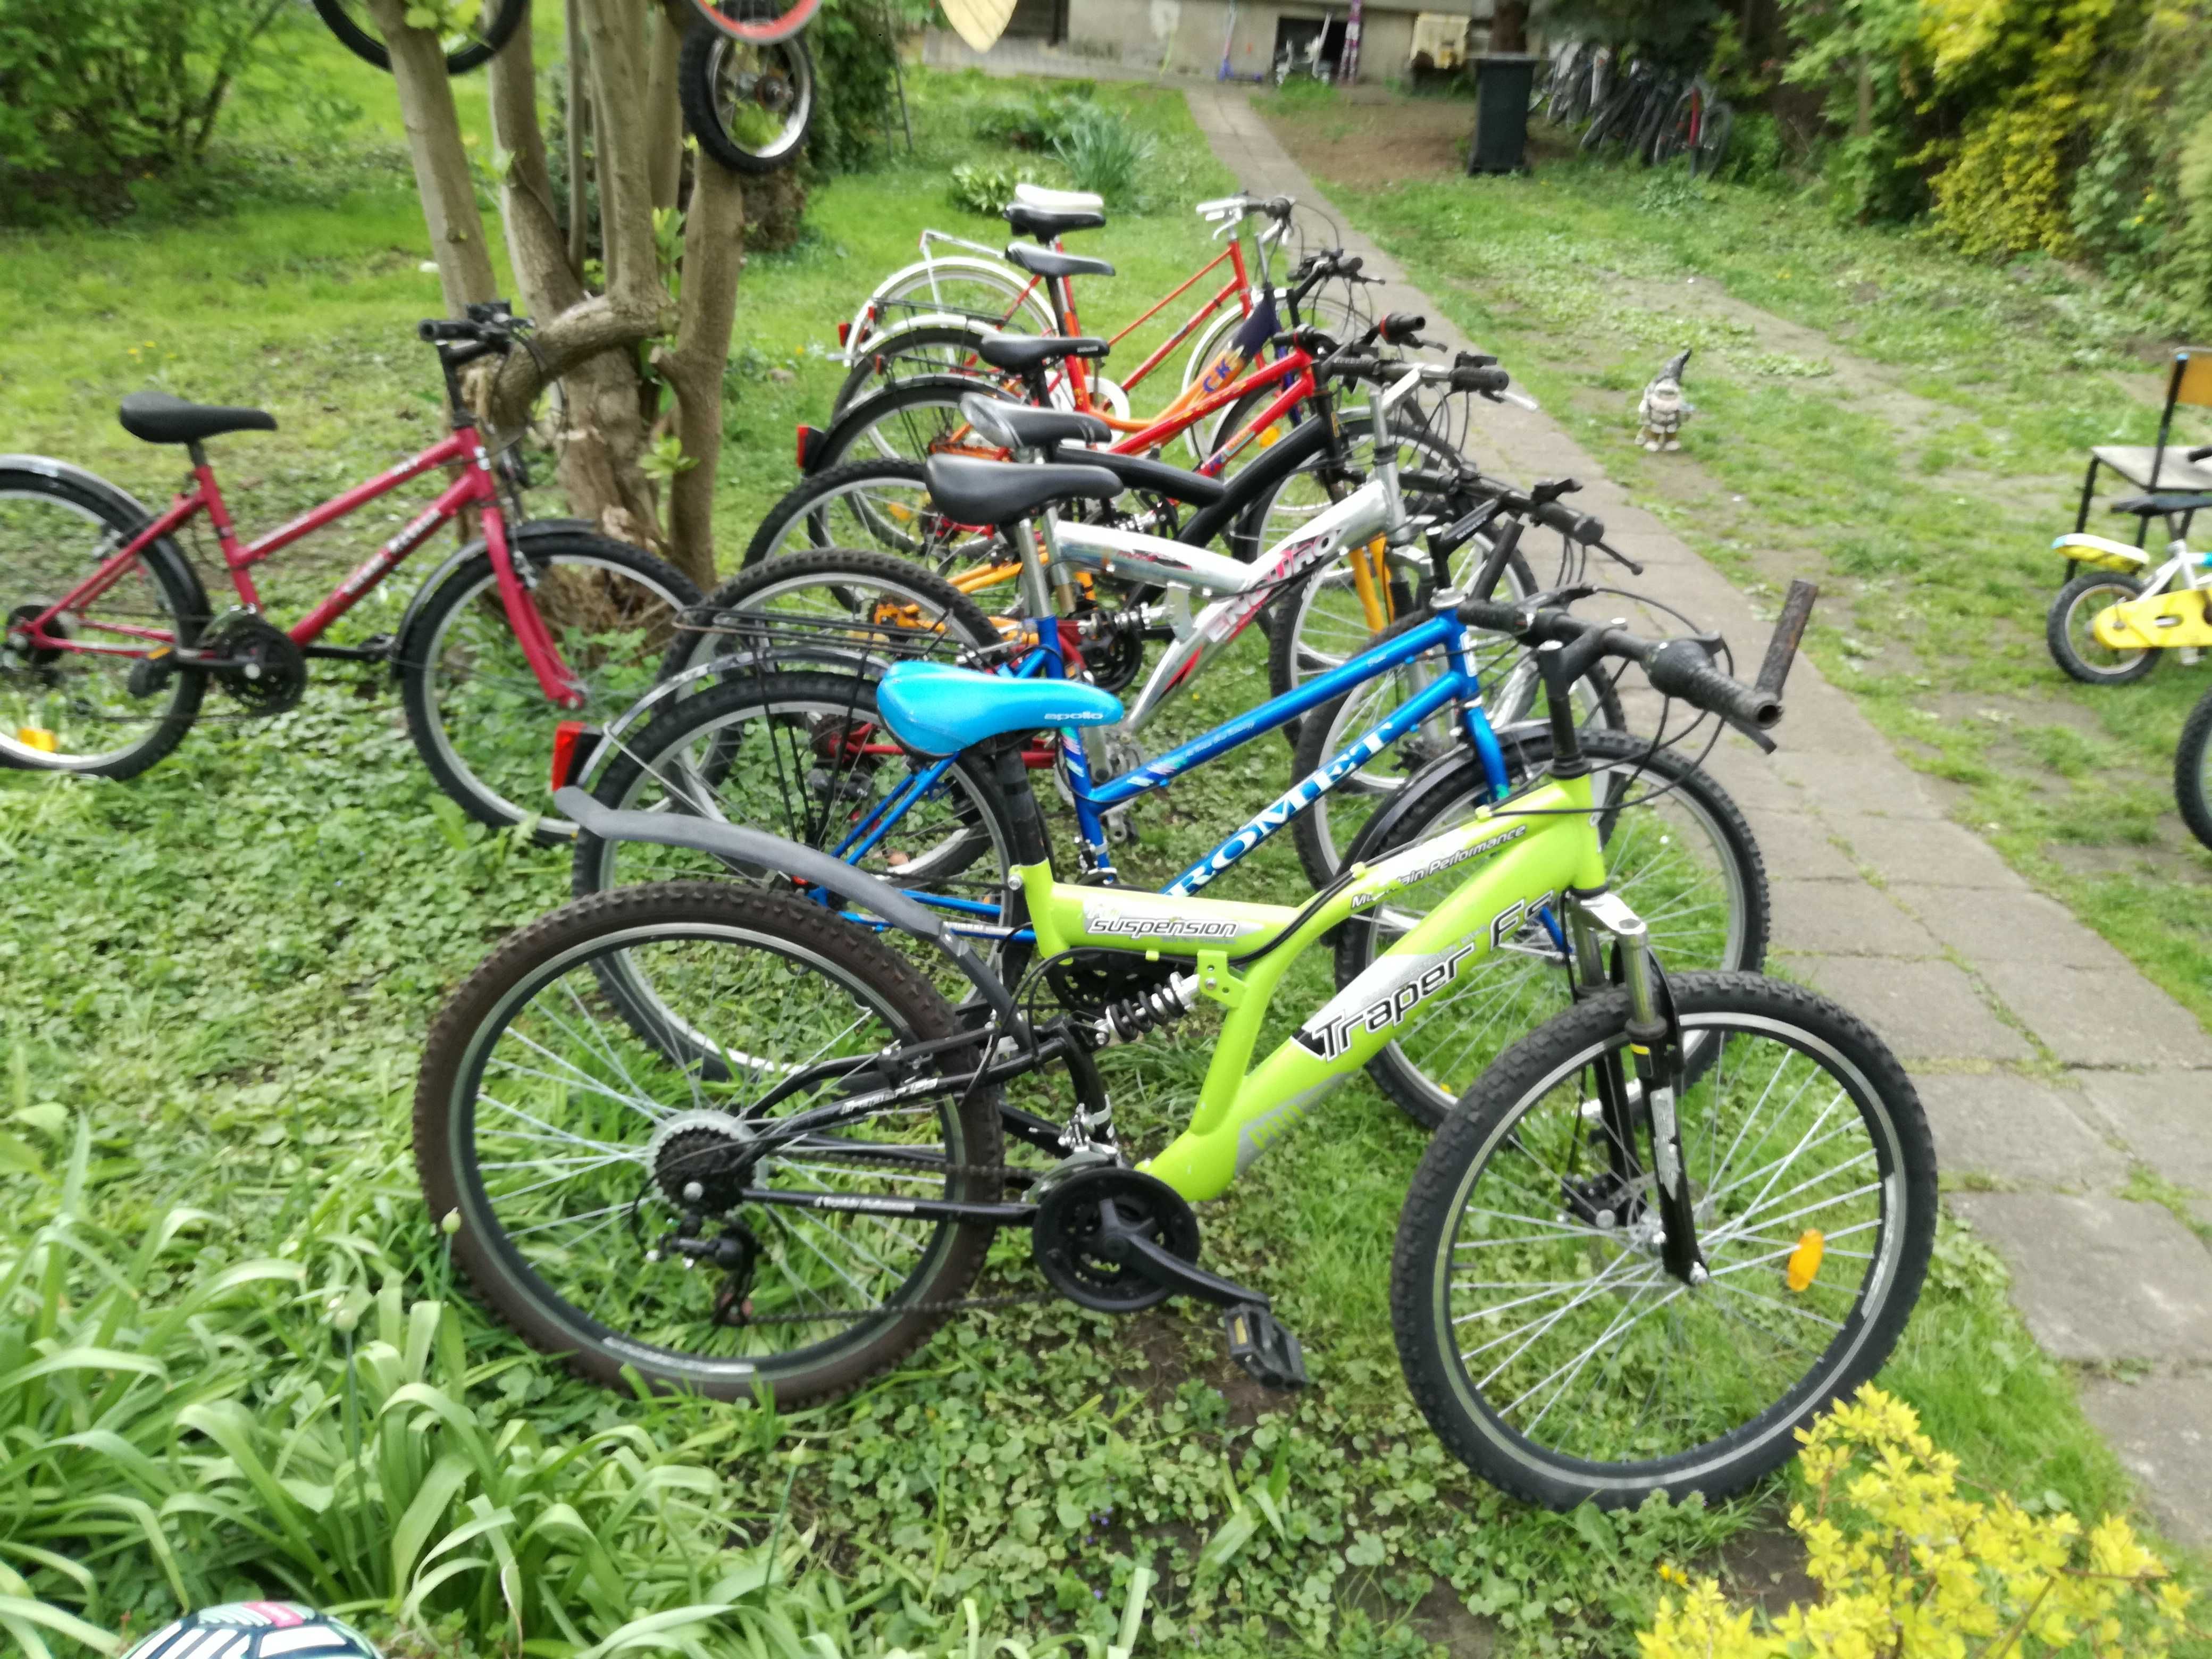 dużo rowerów małych i dużych , najtańsze ceny w Radomiu /ZOBACZ